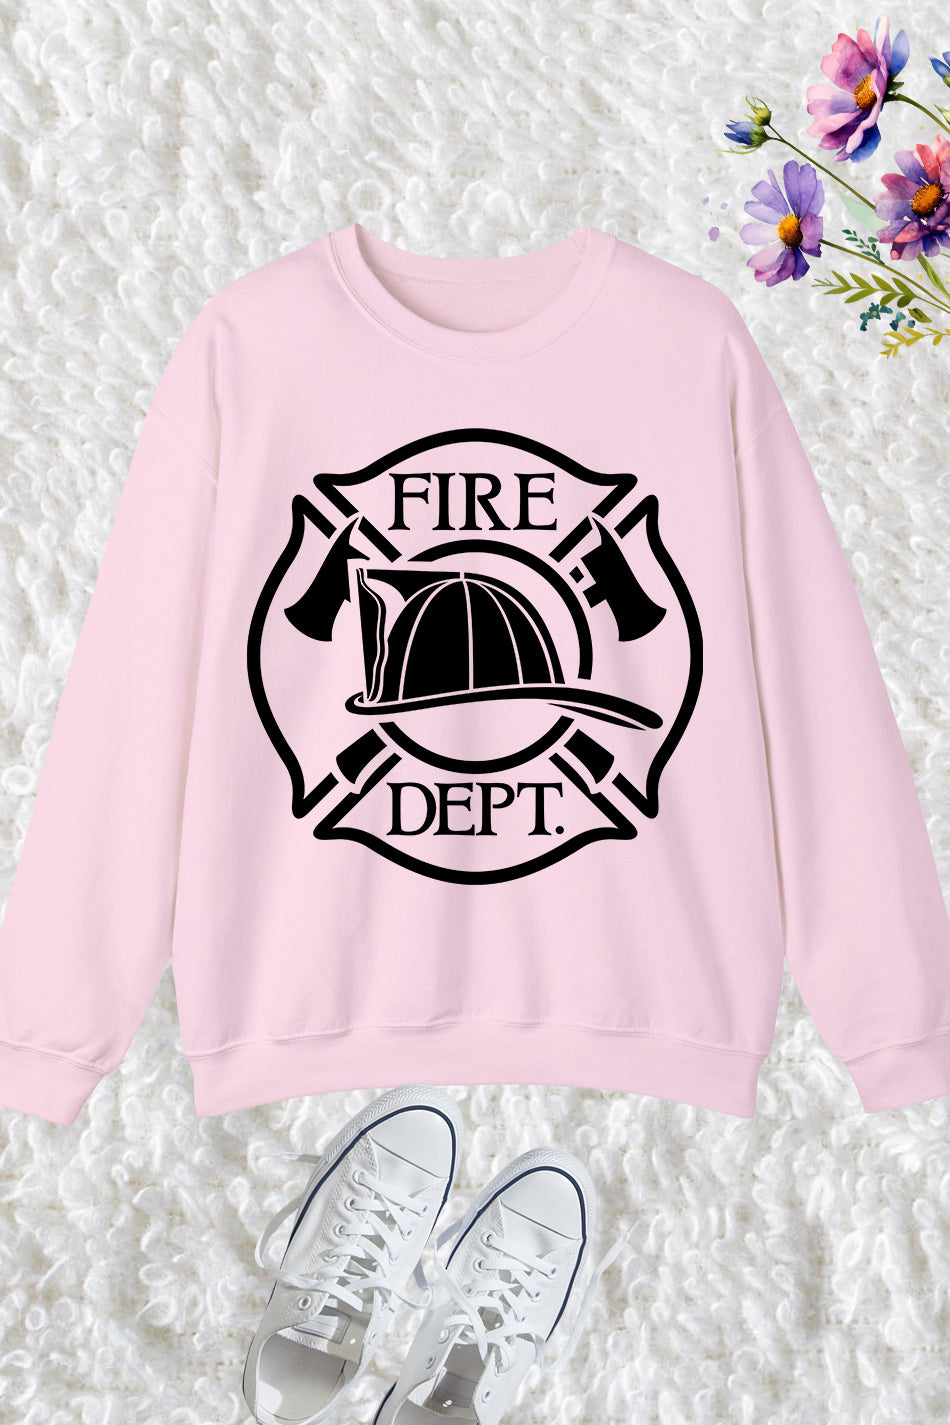 Firefighter Department Sweatshirts